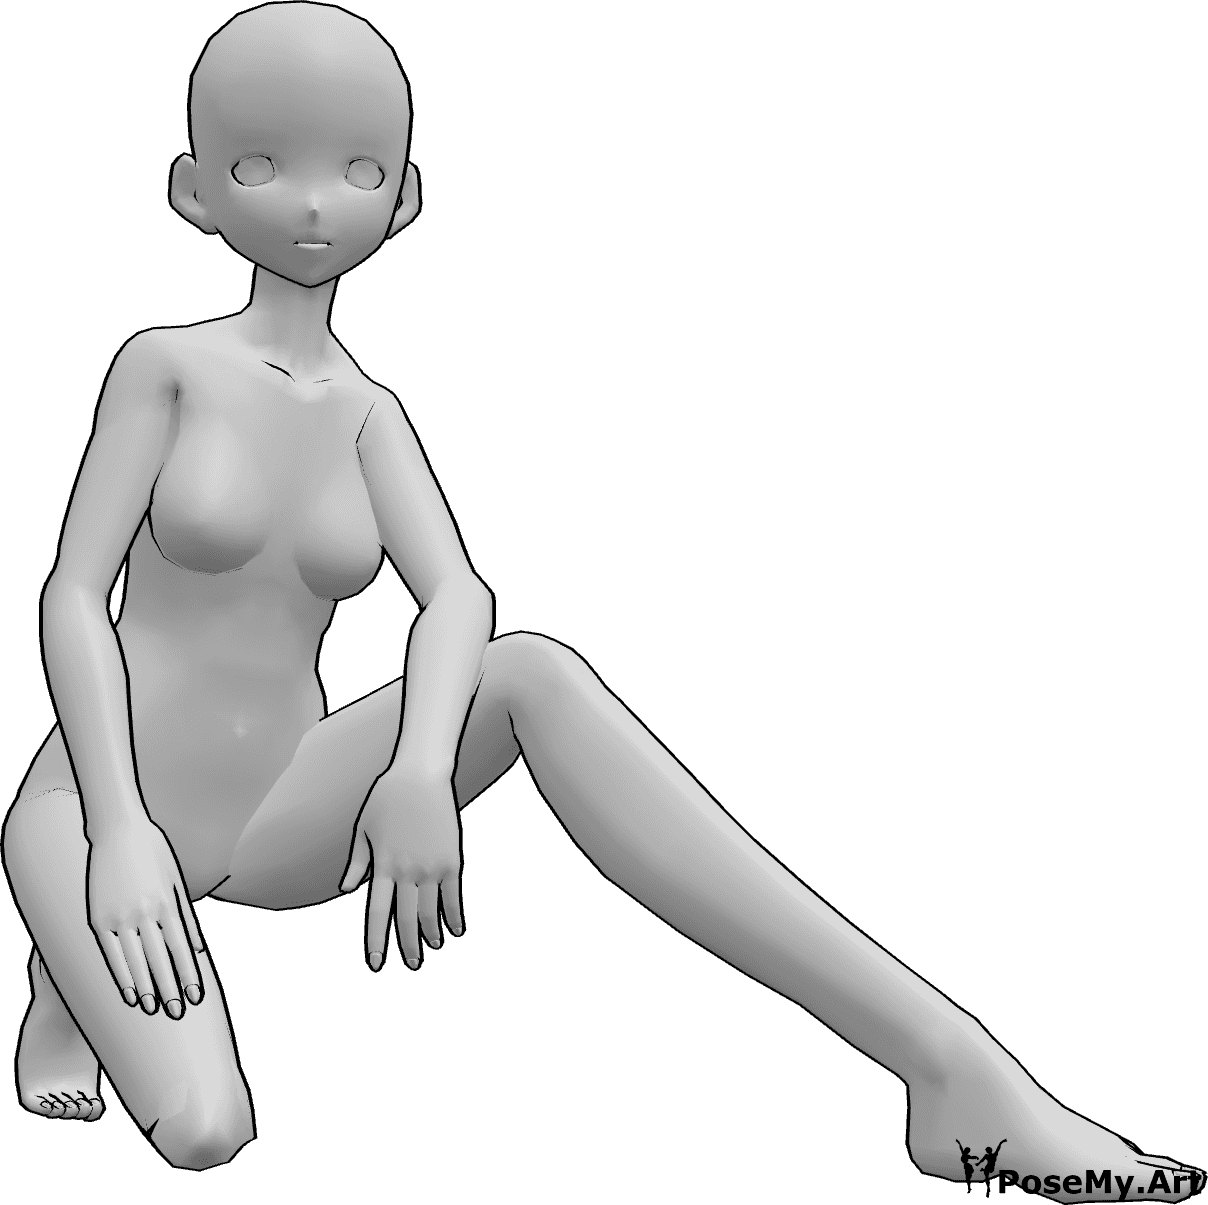 Posen-Referenz- Anime weibliche kniende Pose - Weibliche Anime kniet und posiert, stützt sich auf ihr rechtes Knie und stützt ihre Hände auf ihre Oberschenkel